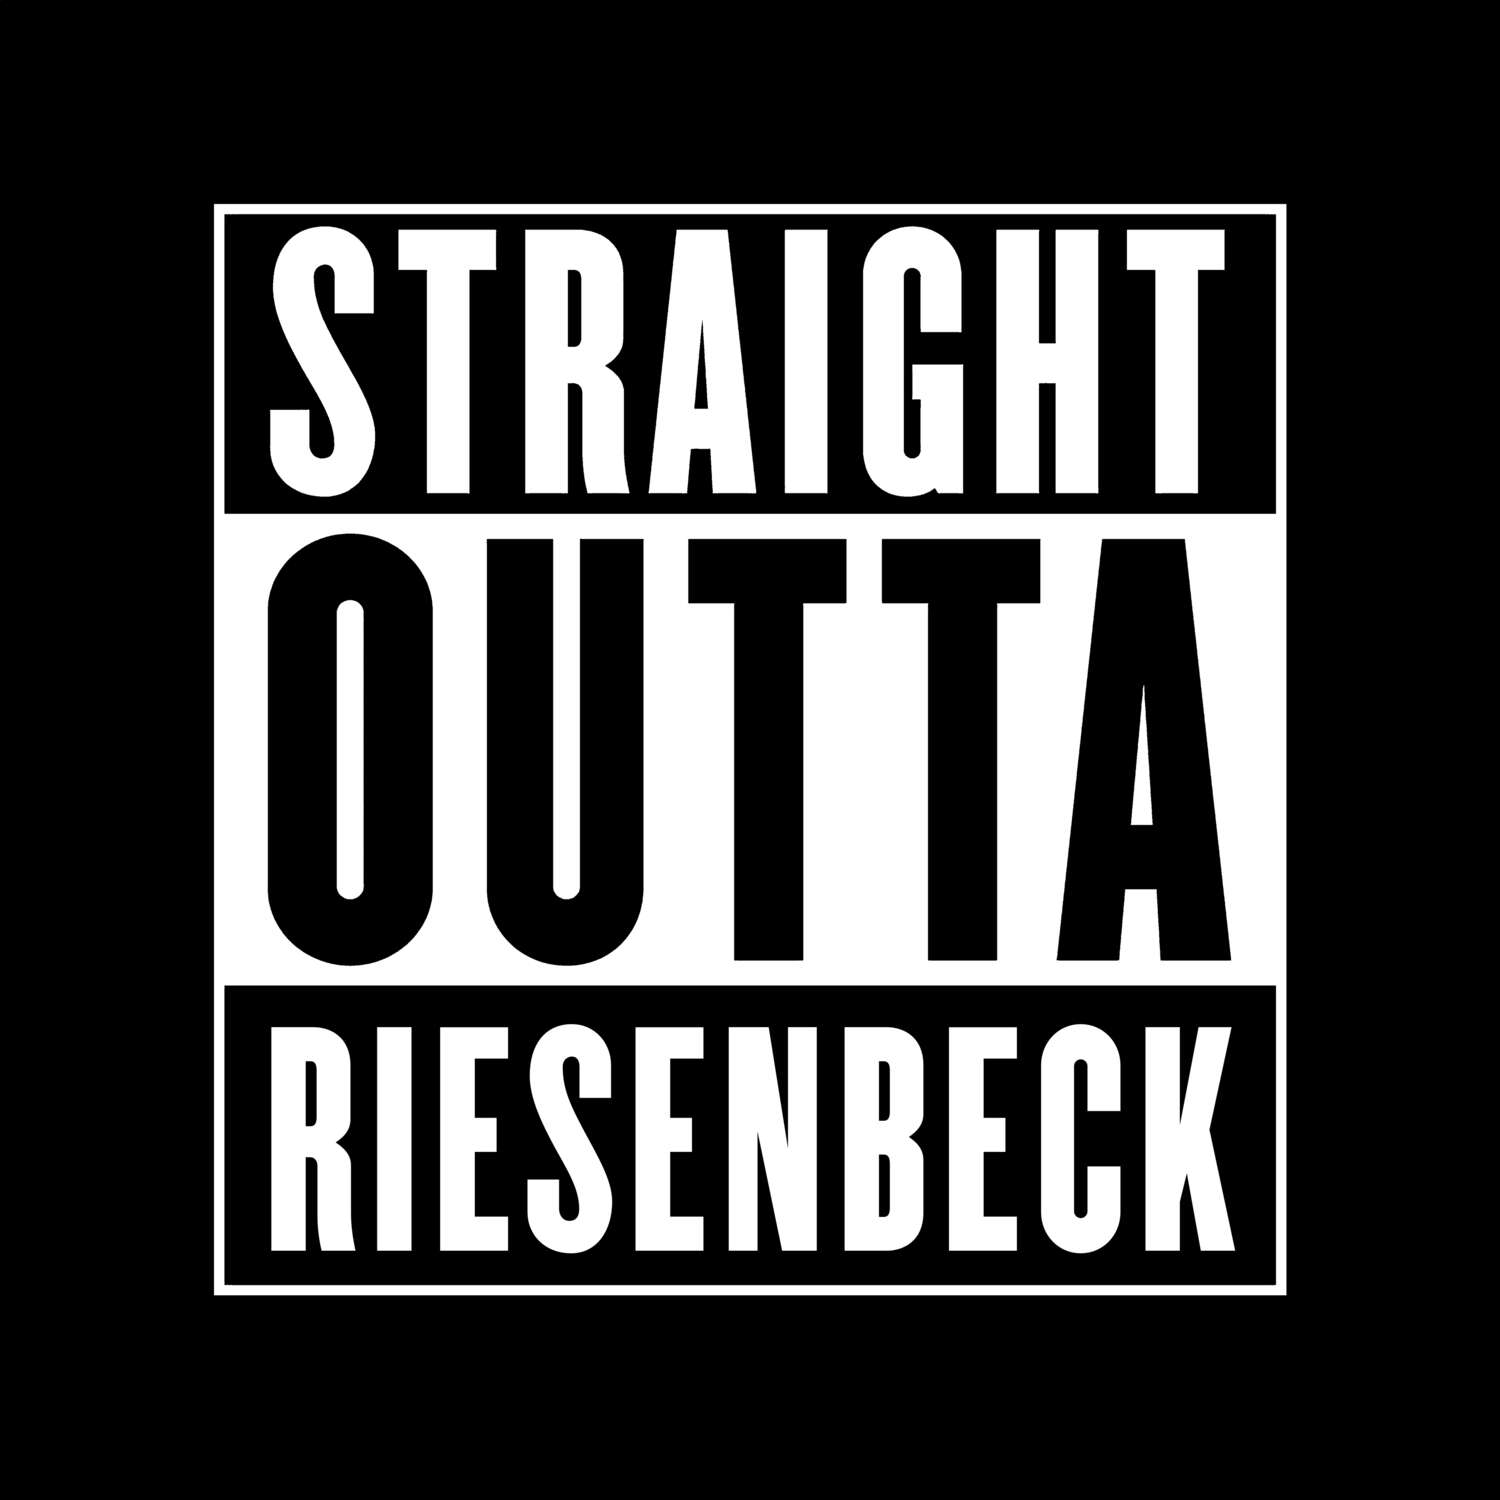 Riesenbeck T-Shirt »Straight Outta«